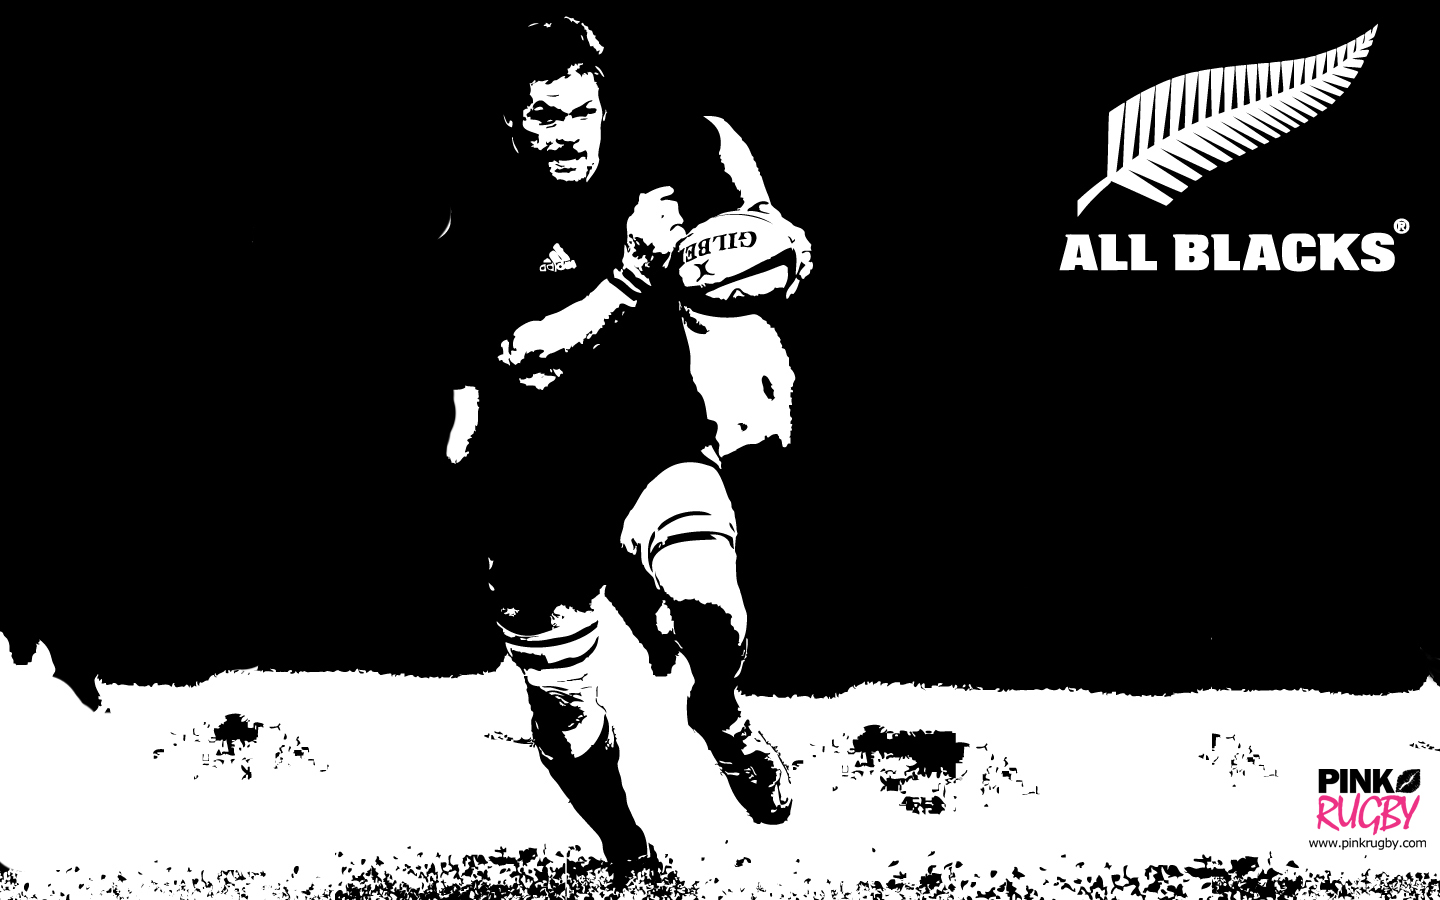 fond d'écran tout noir de rugby,noir et blanc,illustration,pochoir,conception graphique,joueur